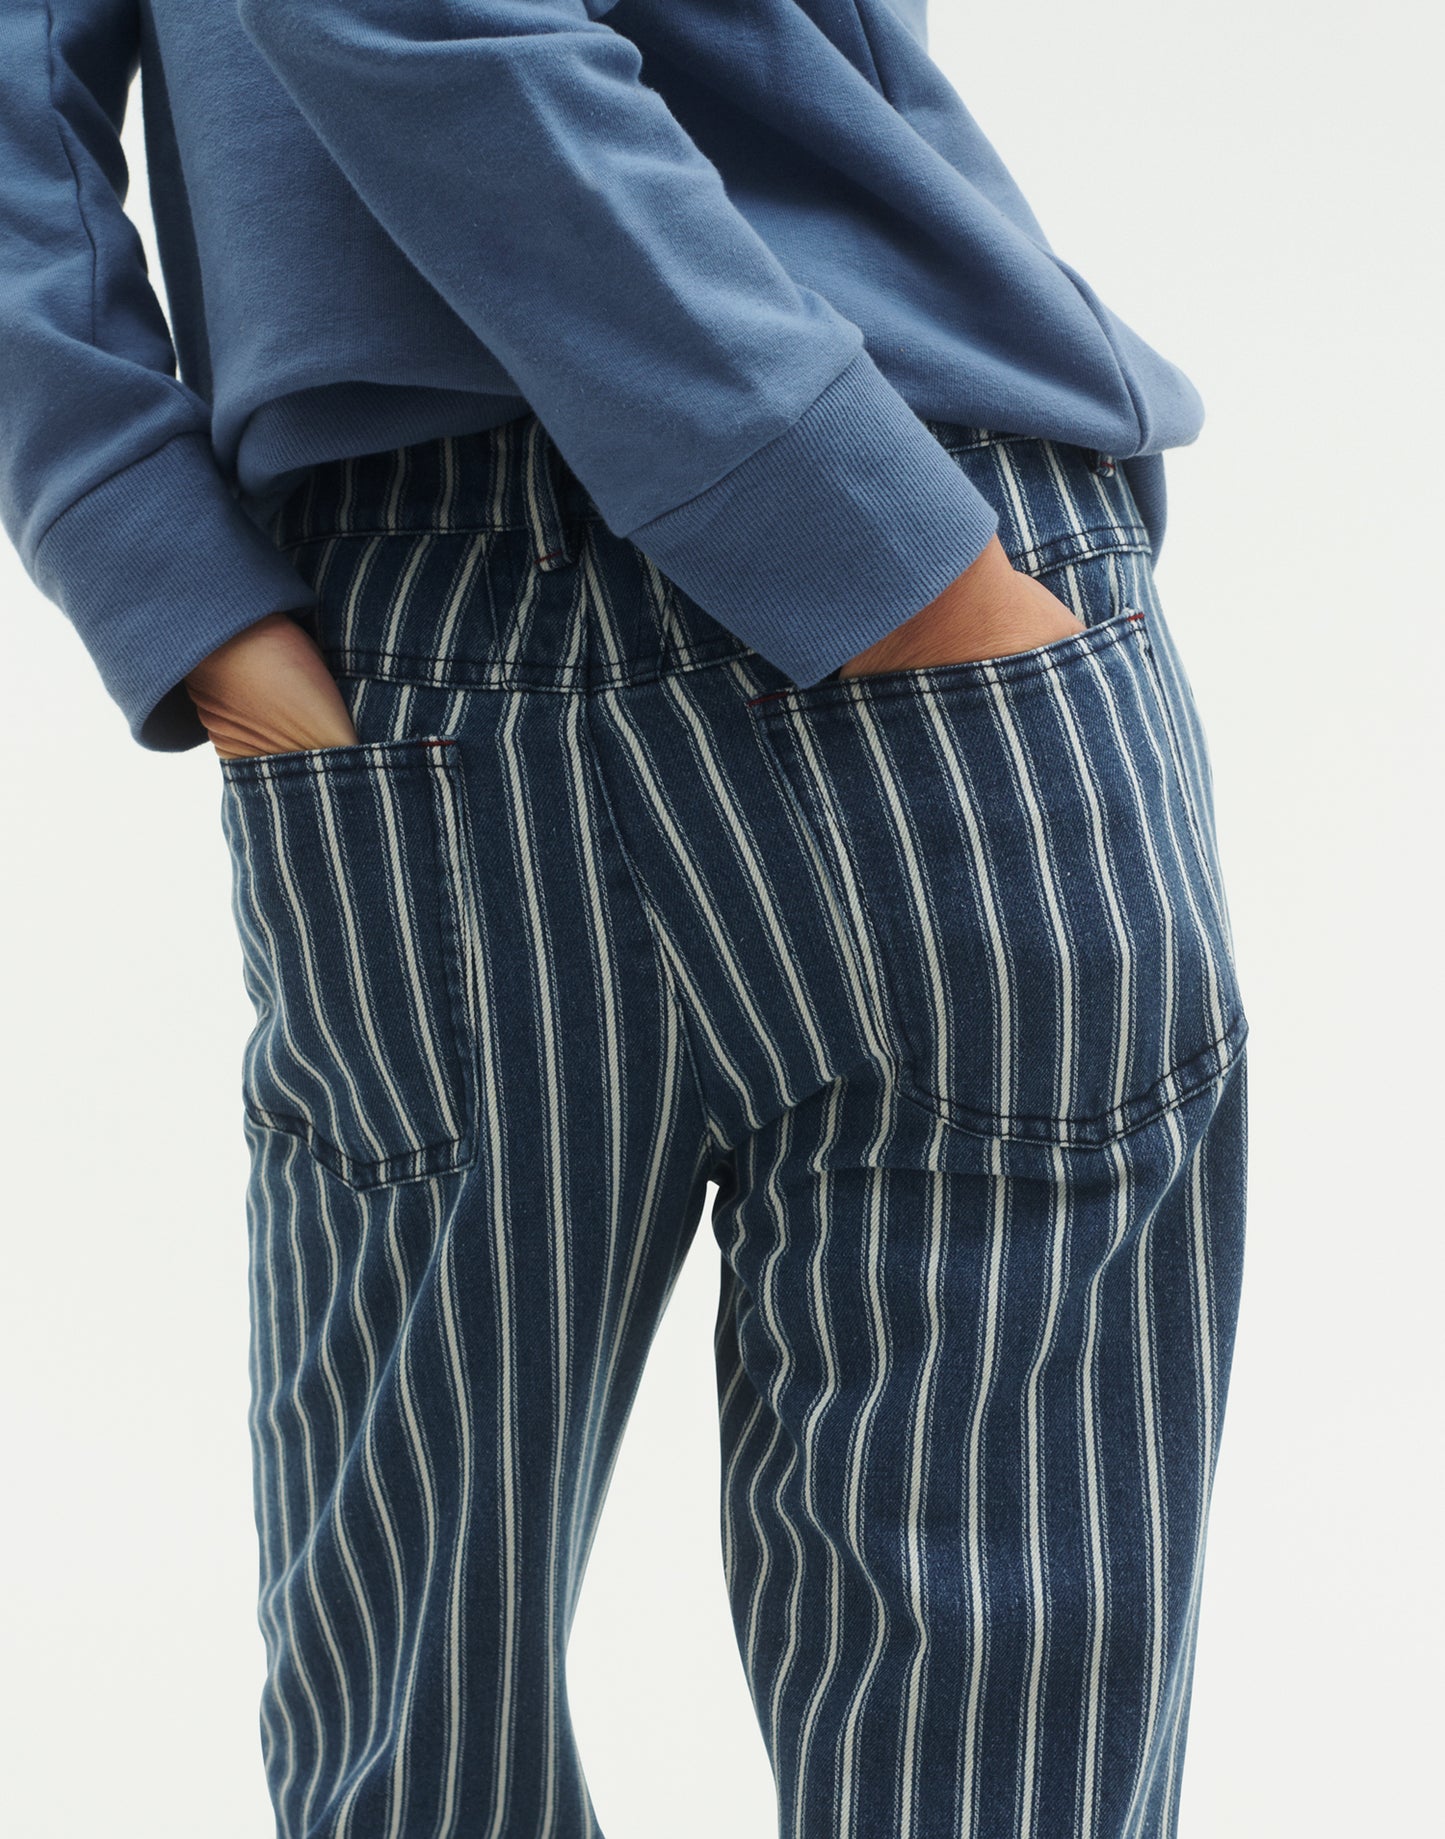 Pantalon Stripes